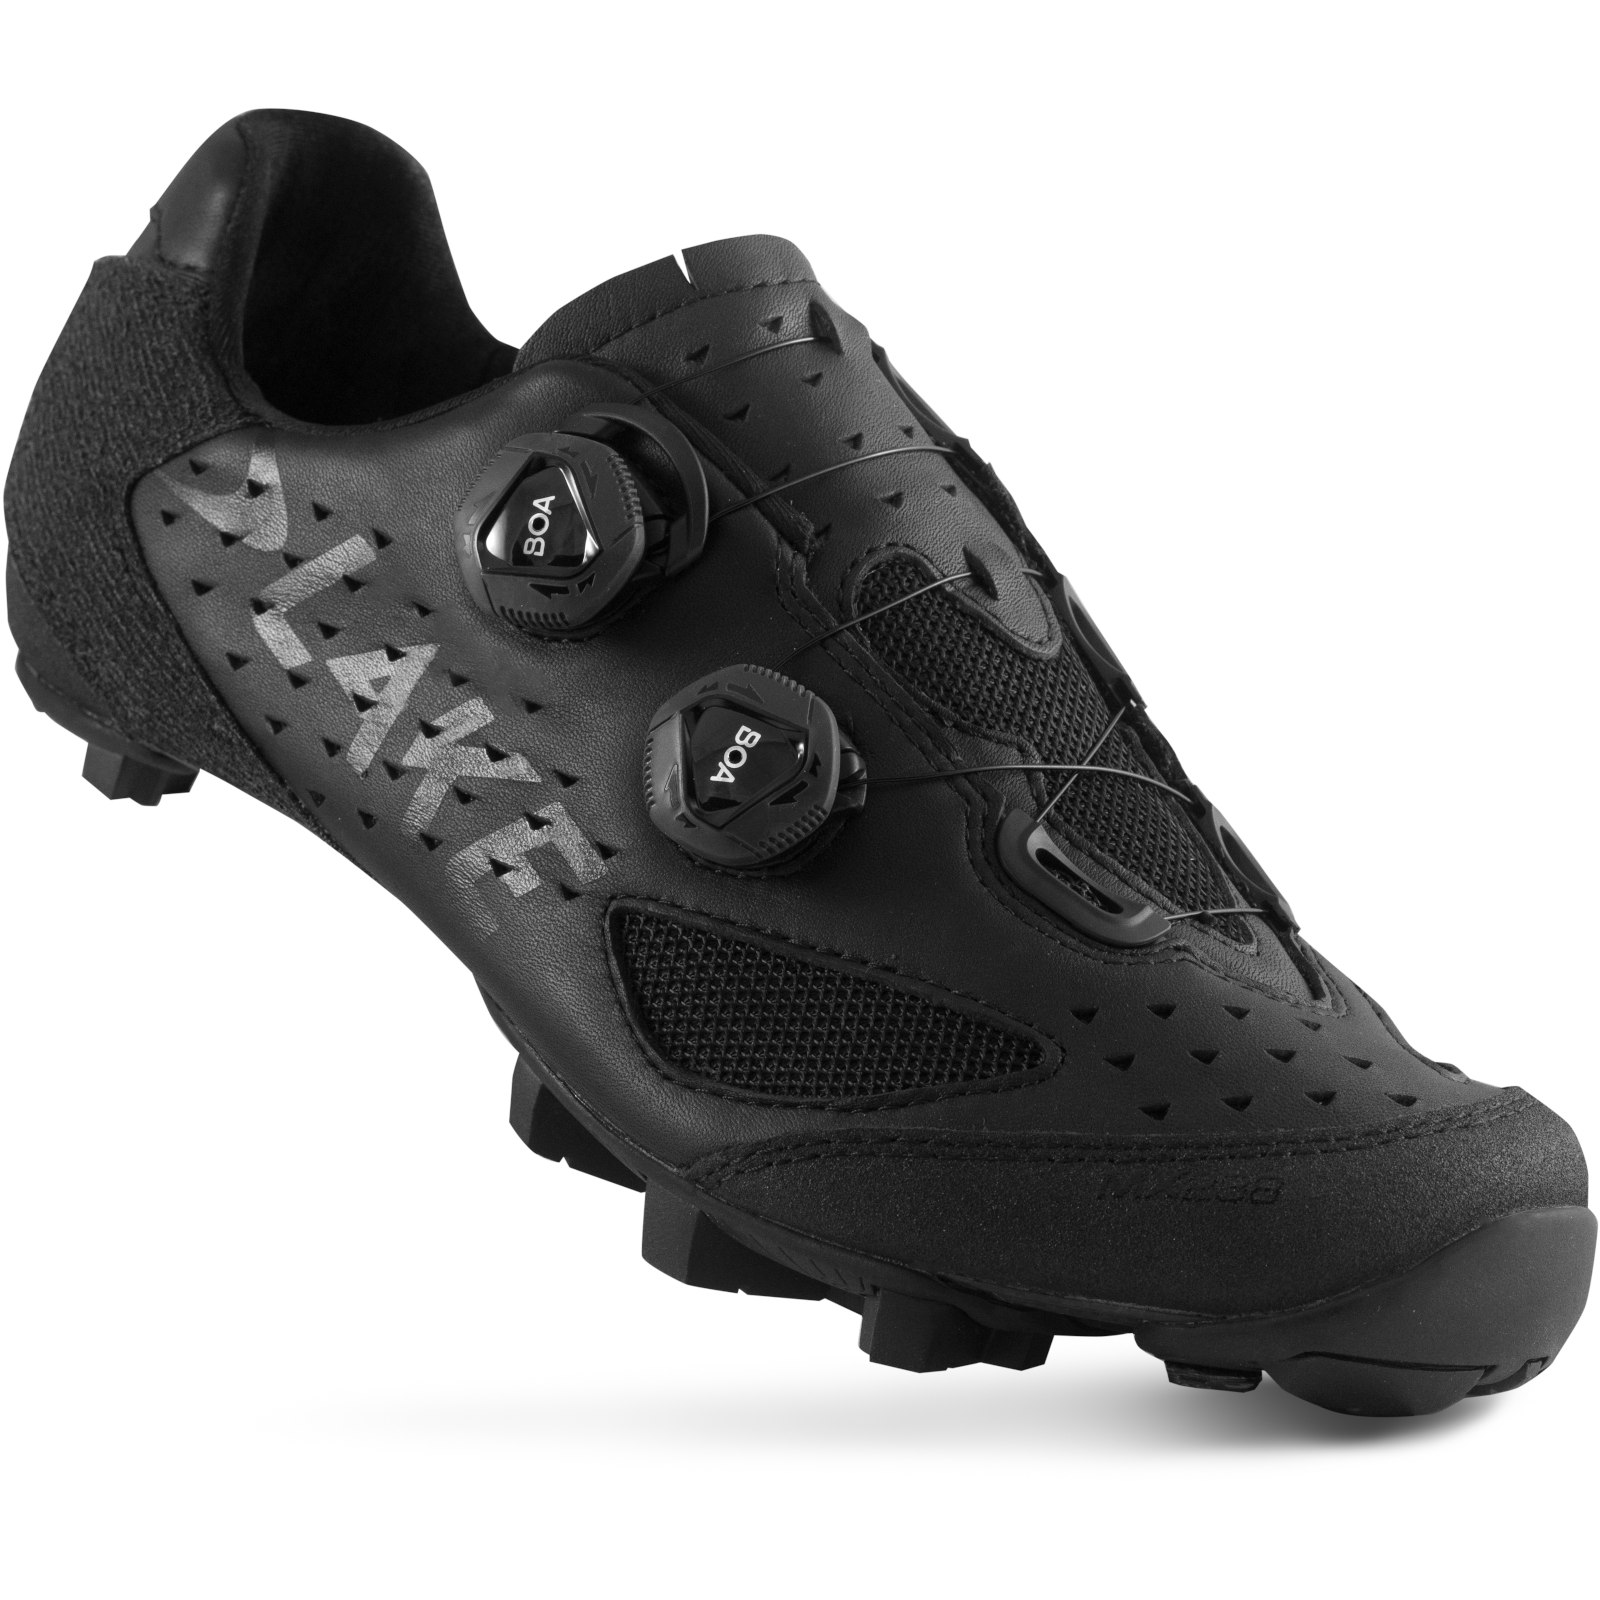 Produktbild von Lake MX 238 MTB Schuhe - schwarz/schwarz